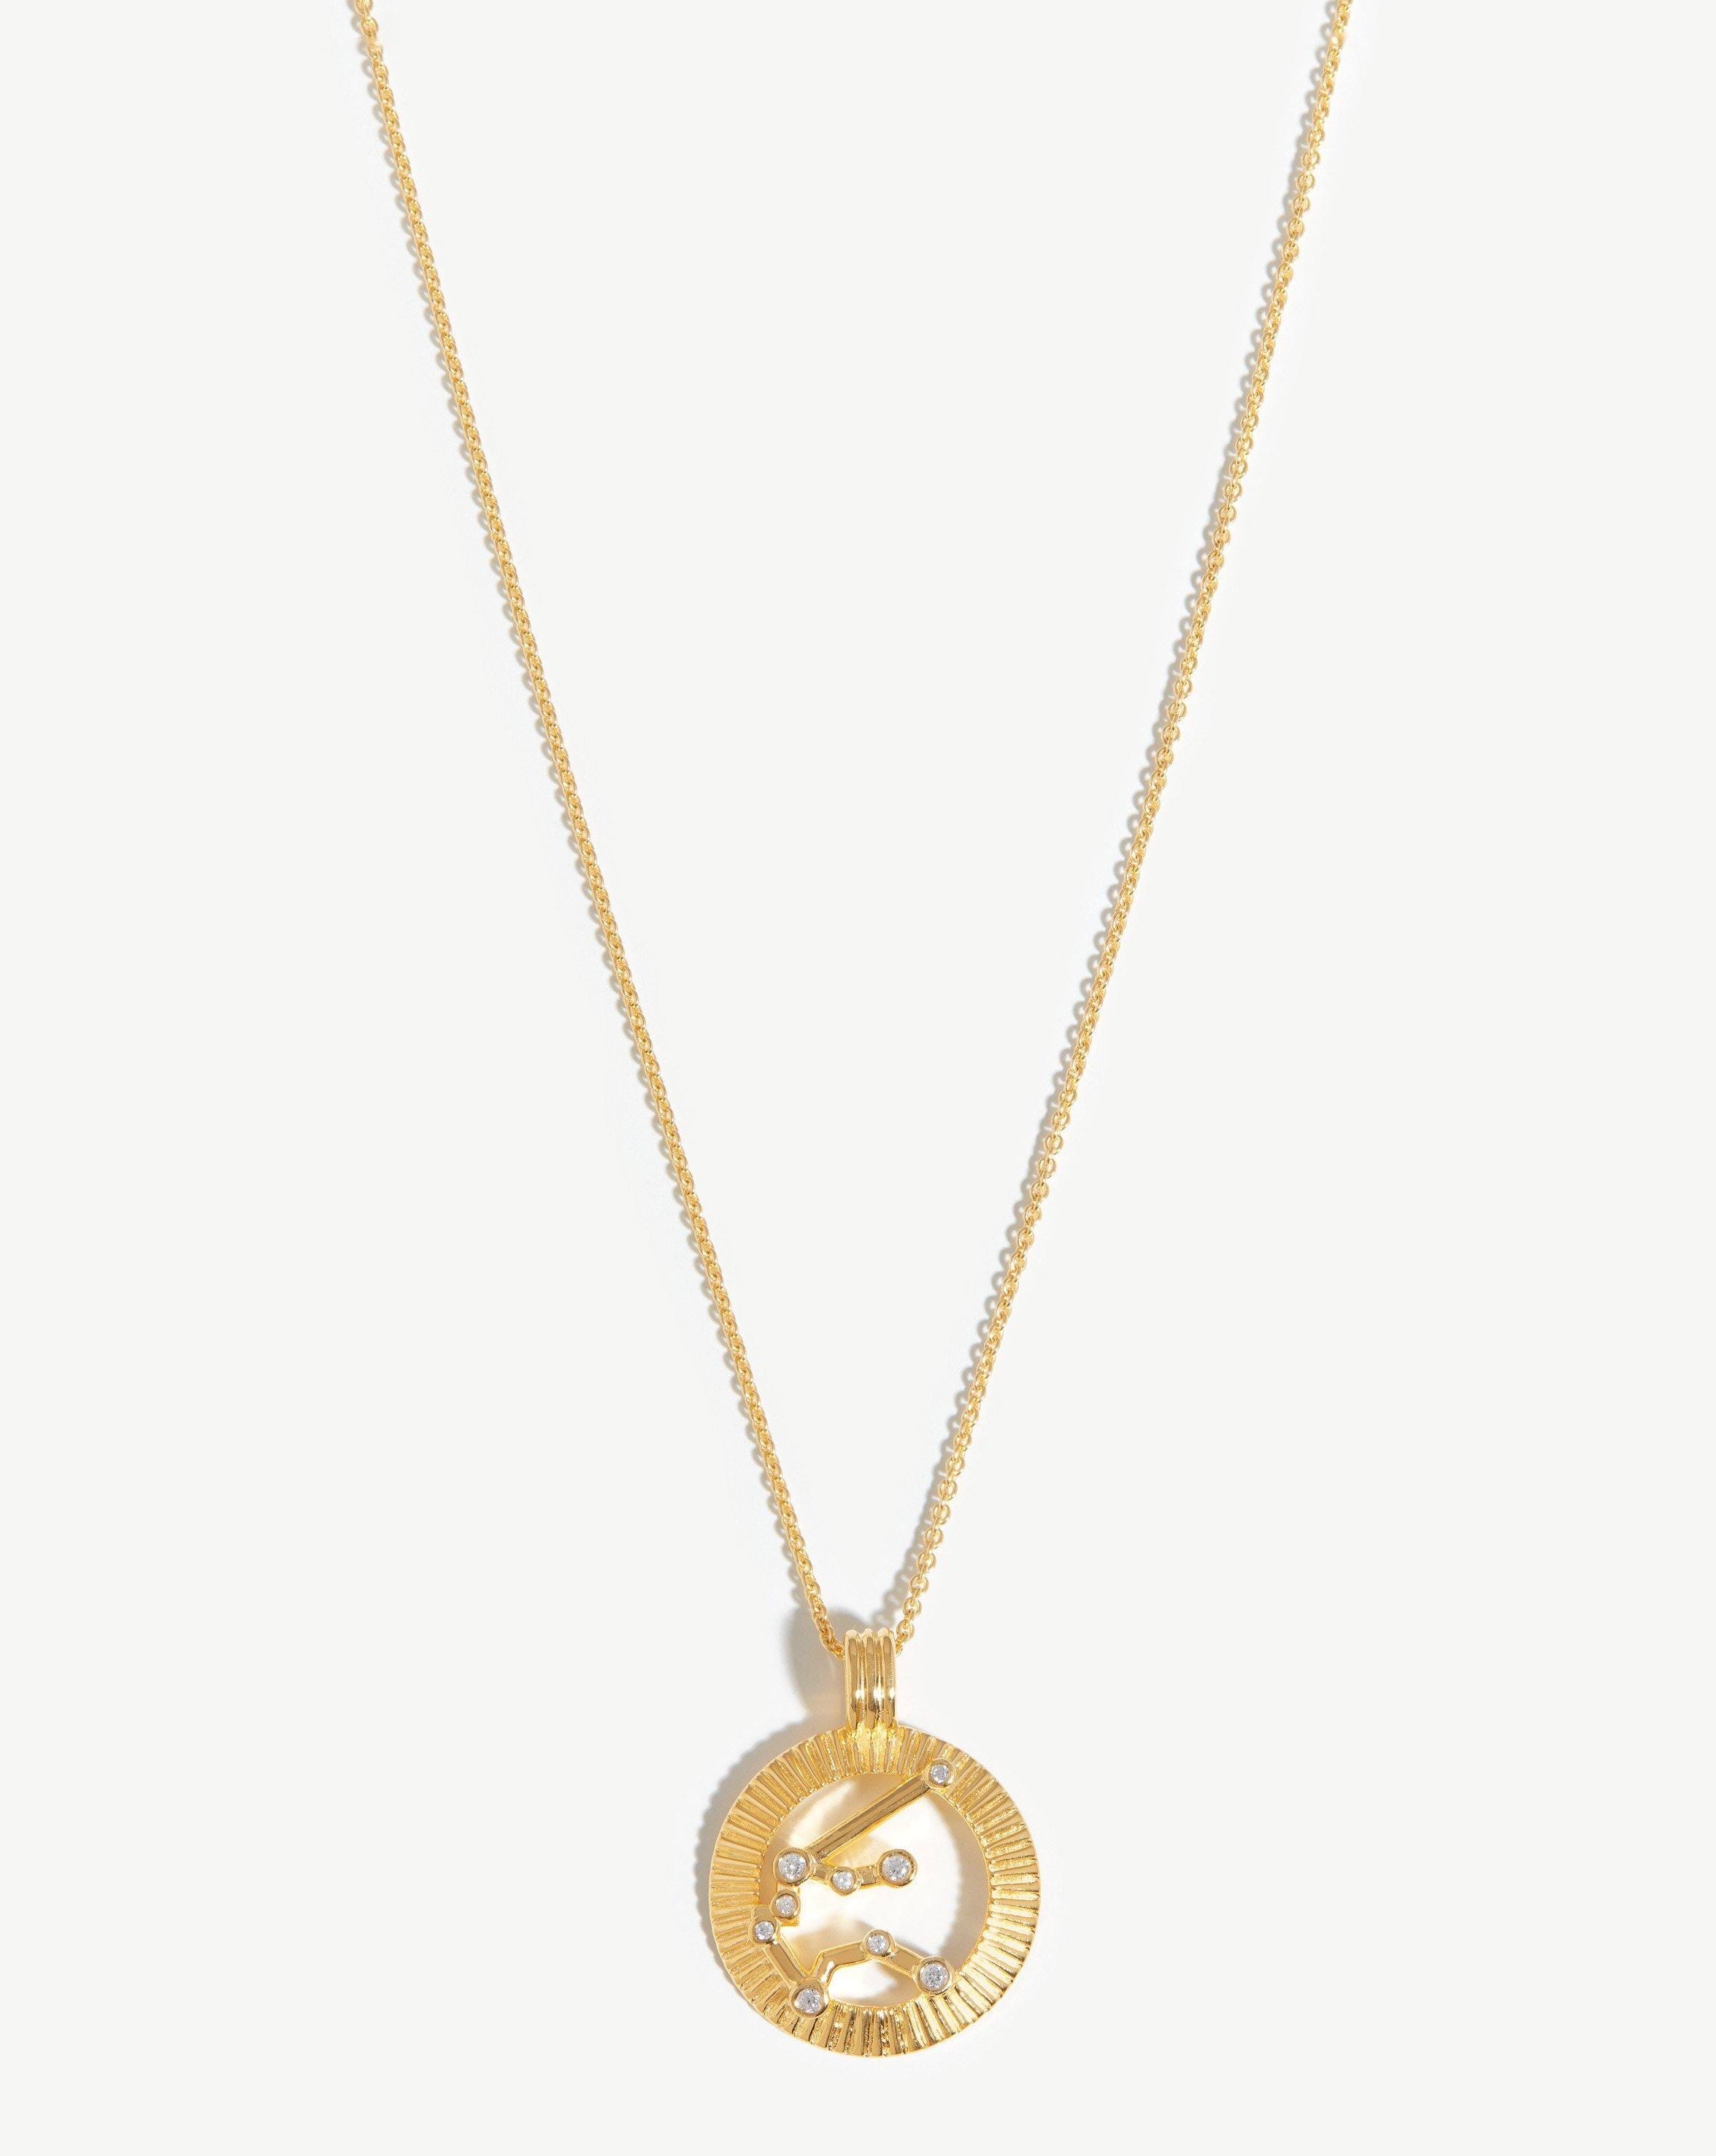 Zodiac Constellation Pendant Necklace - Aquarius | 18ct Gold Plated Vermeil/Aquarius Necklaces Missoma 